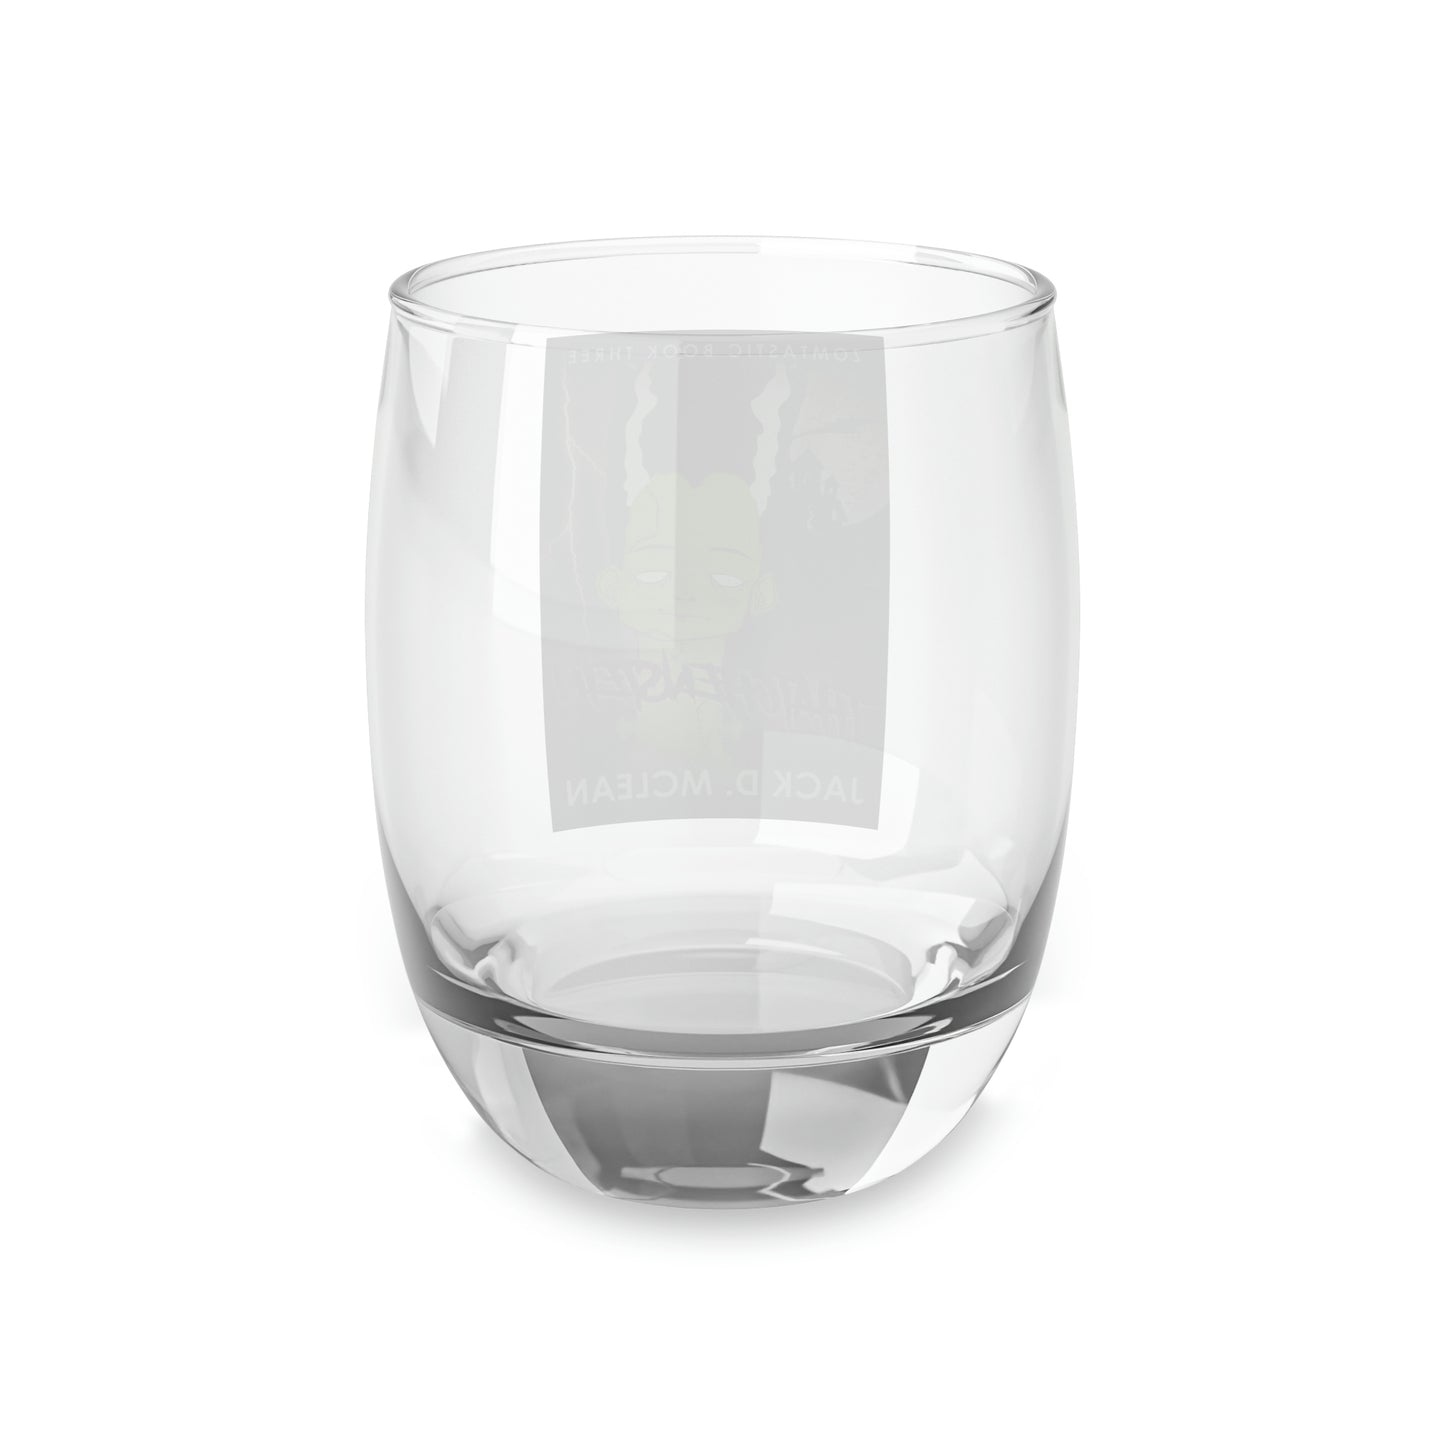 Thatchenstein - Whiskey Glass